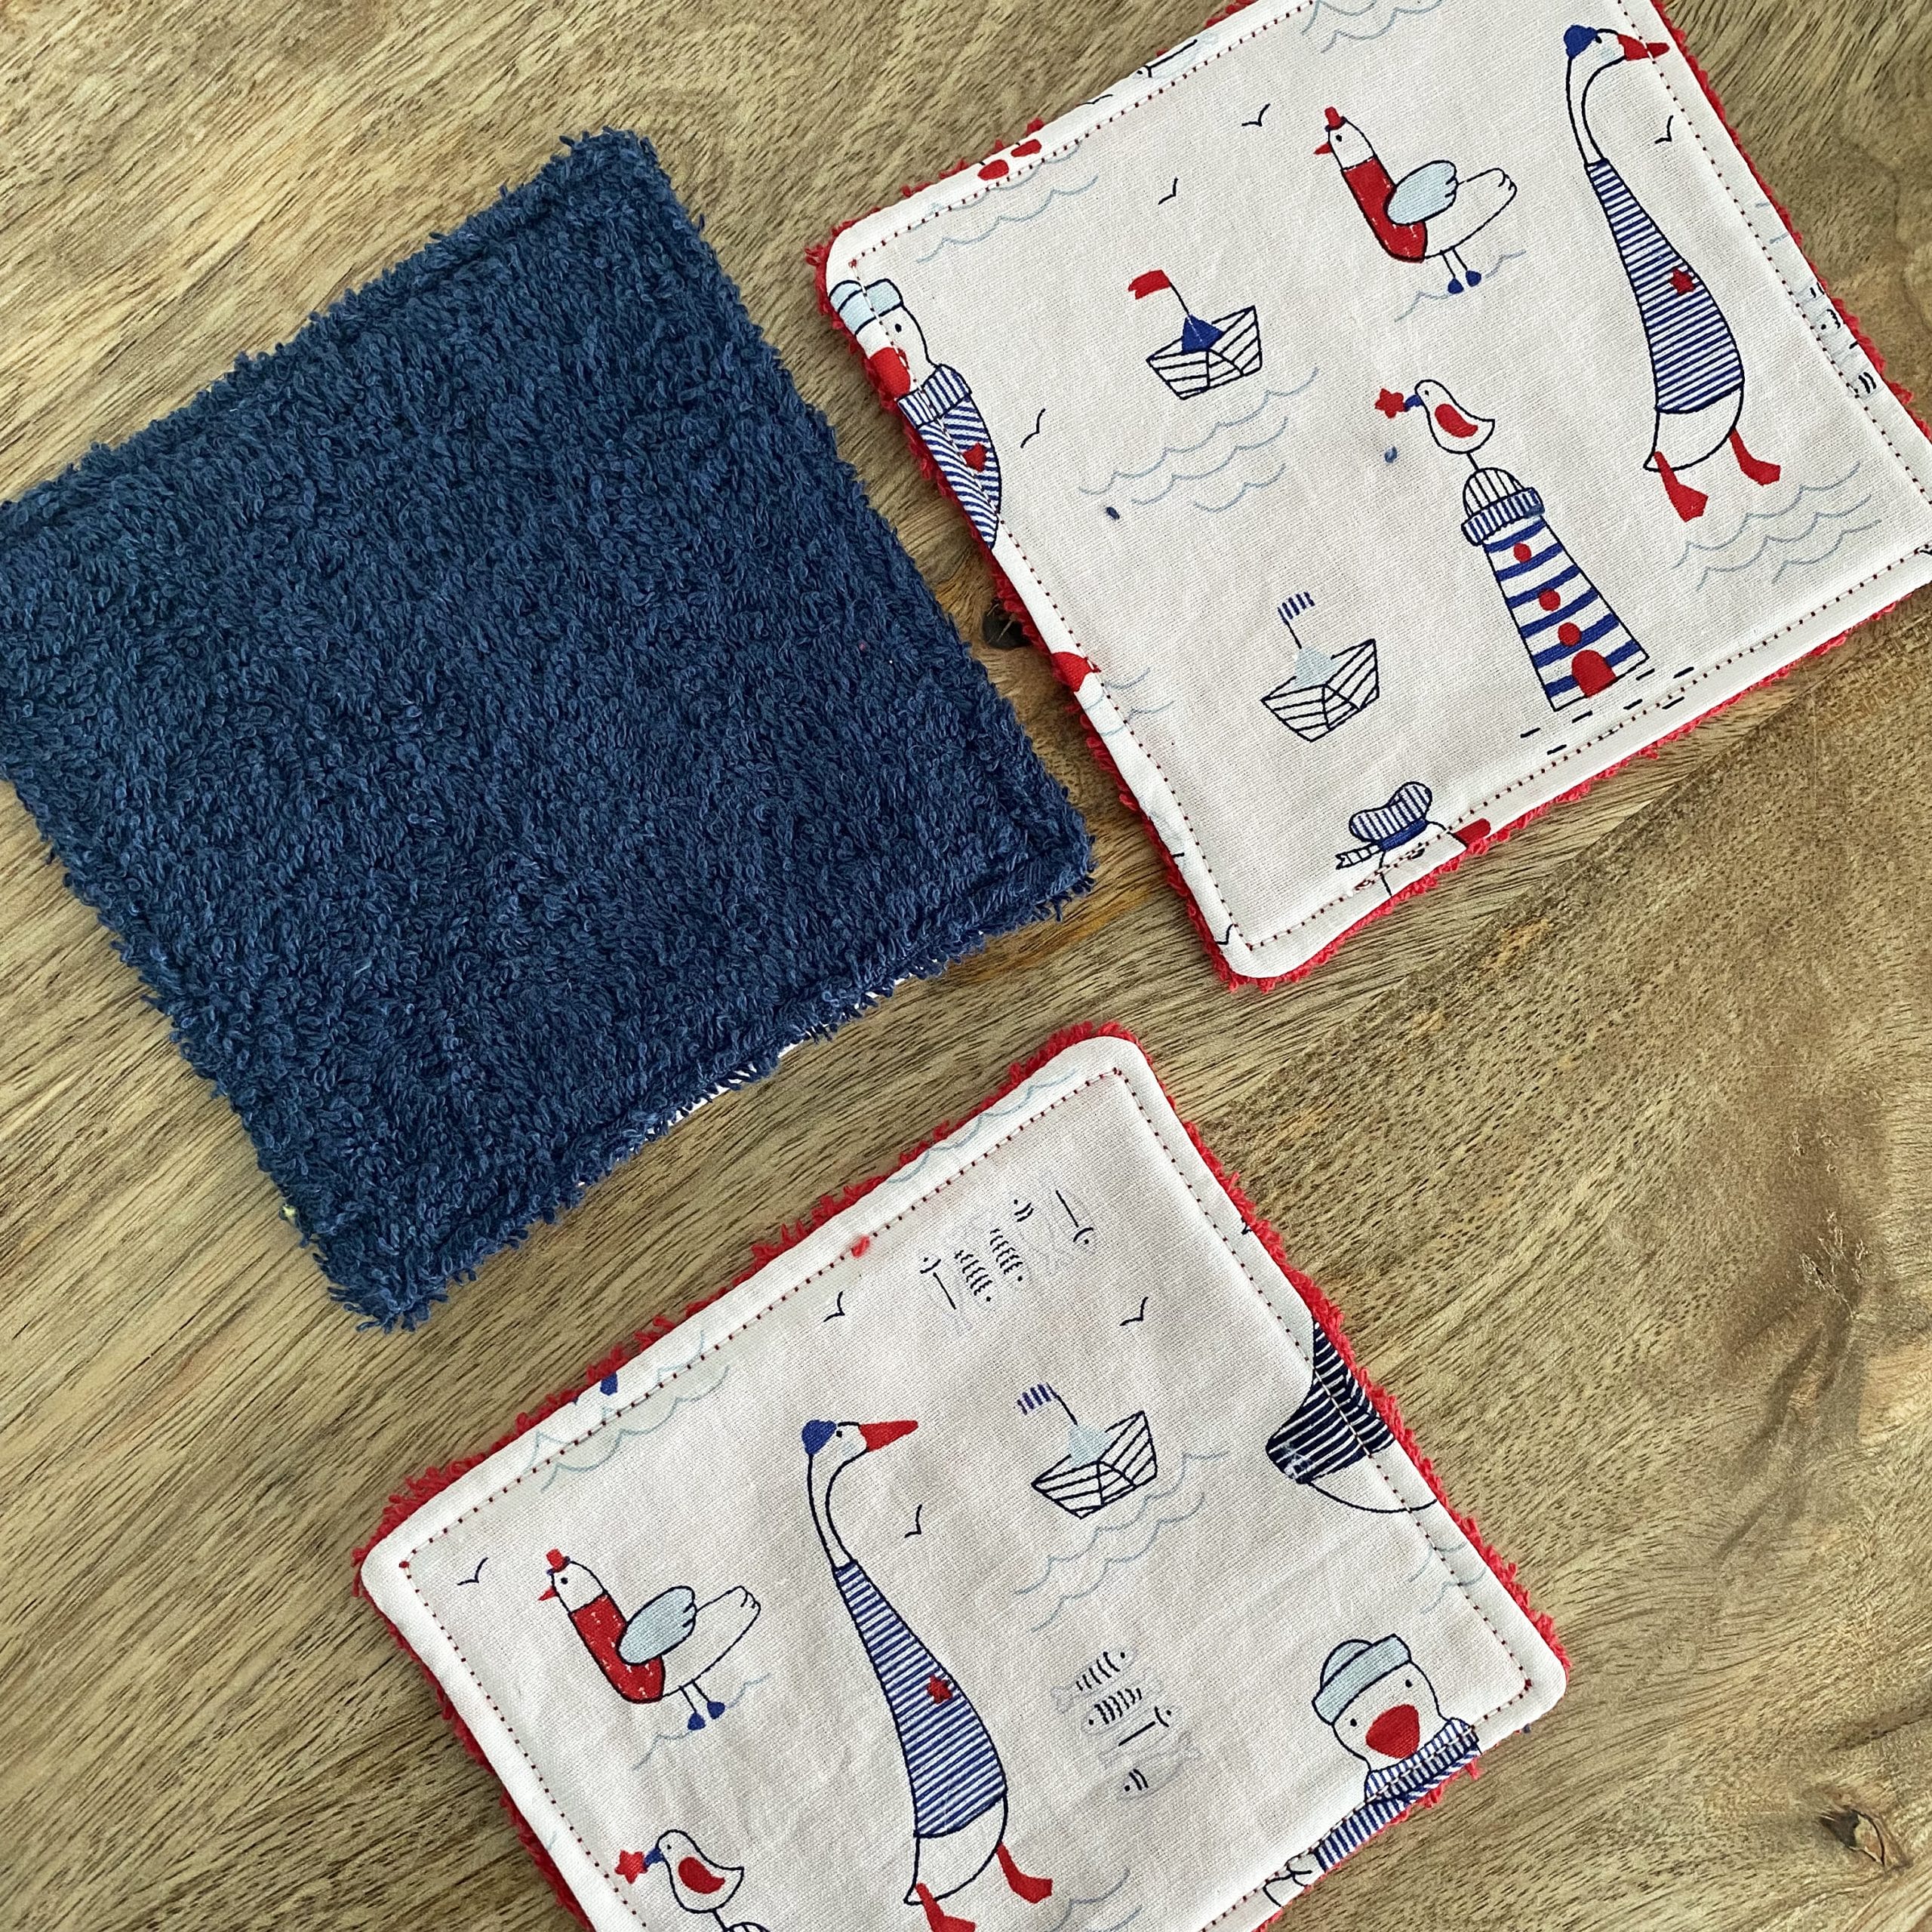 Kit de naissance panier-lingettes-bavoir-gants de toilette - Miloo